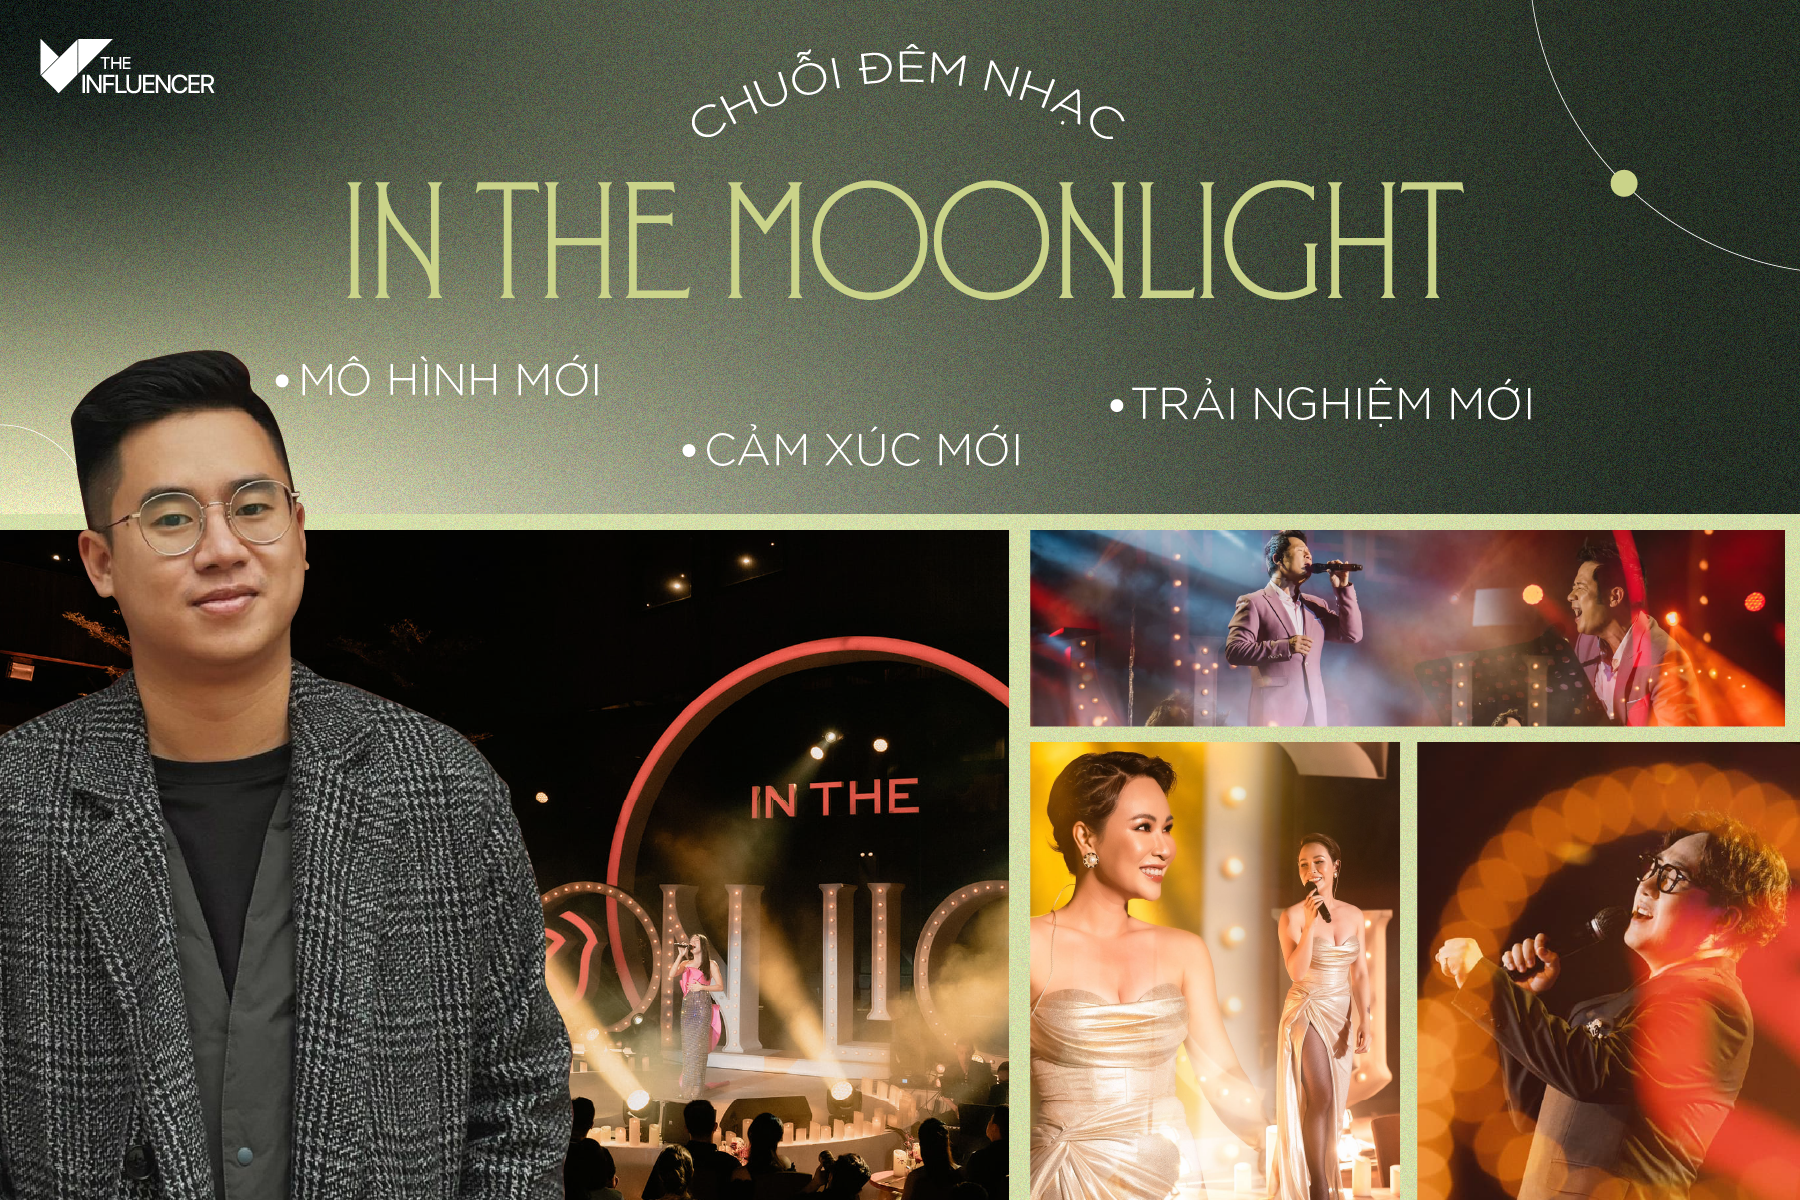 Chuỗi đêm nhạc In The Moonlight: Mô hình mới, cảm xúc mới, trải nghiệm mới